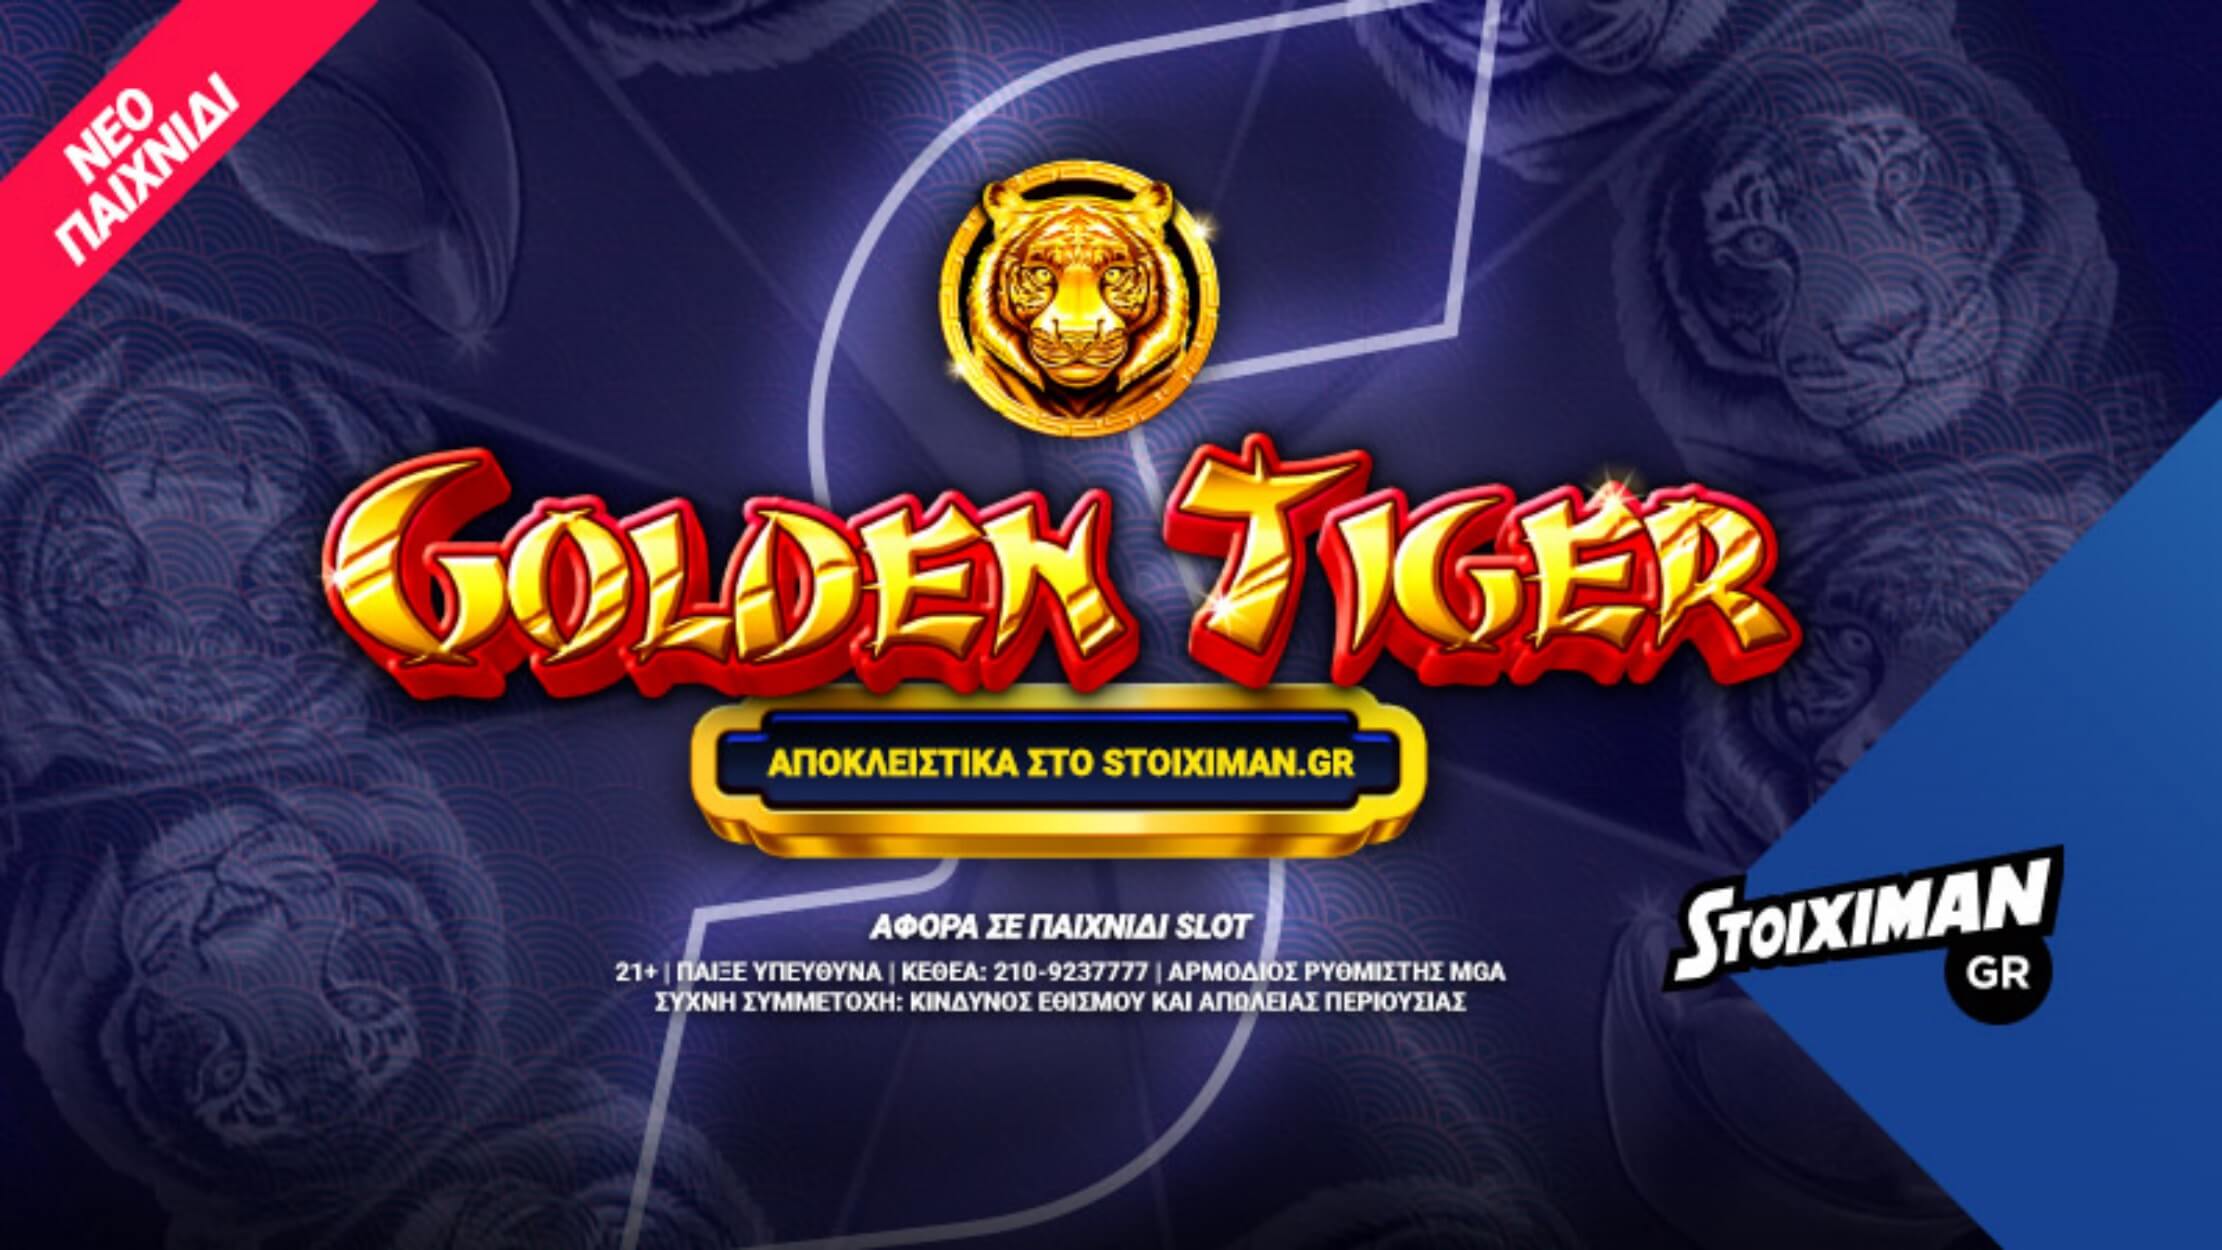 Το Golden Tiger αποκλειστικά στο Casino του Stoiximan.gr!